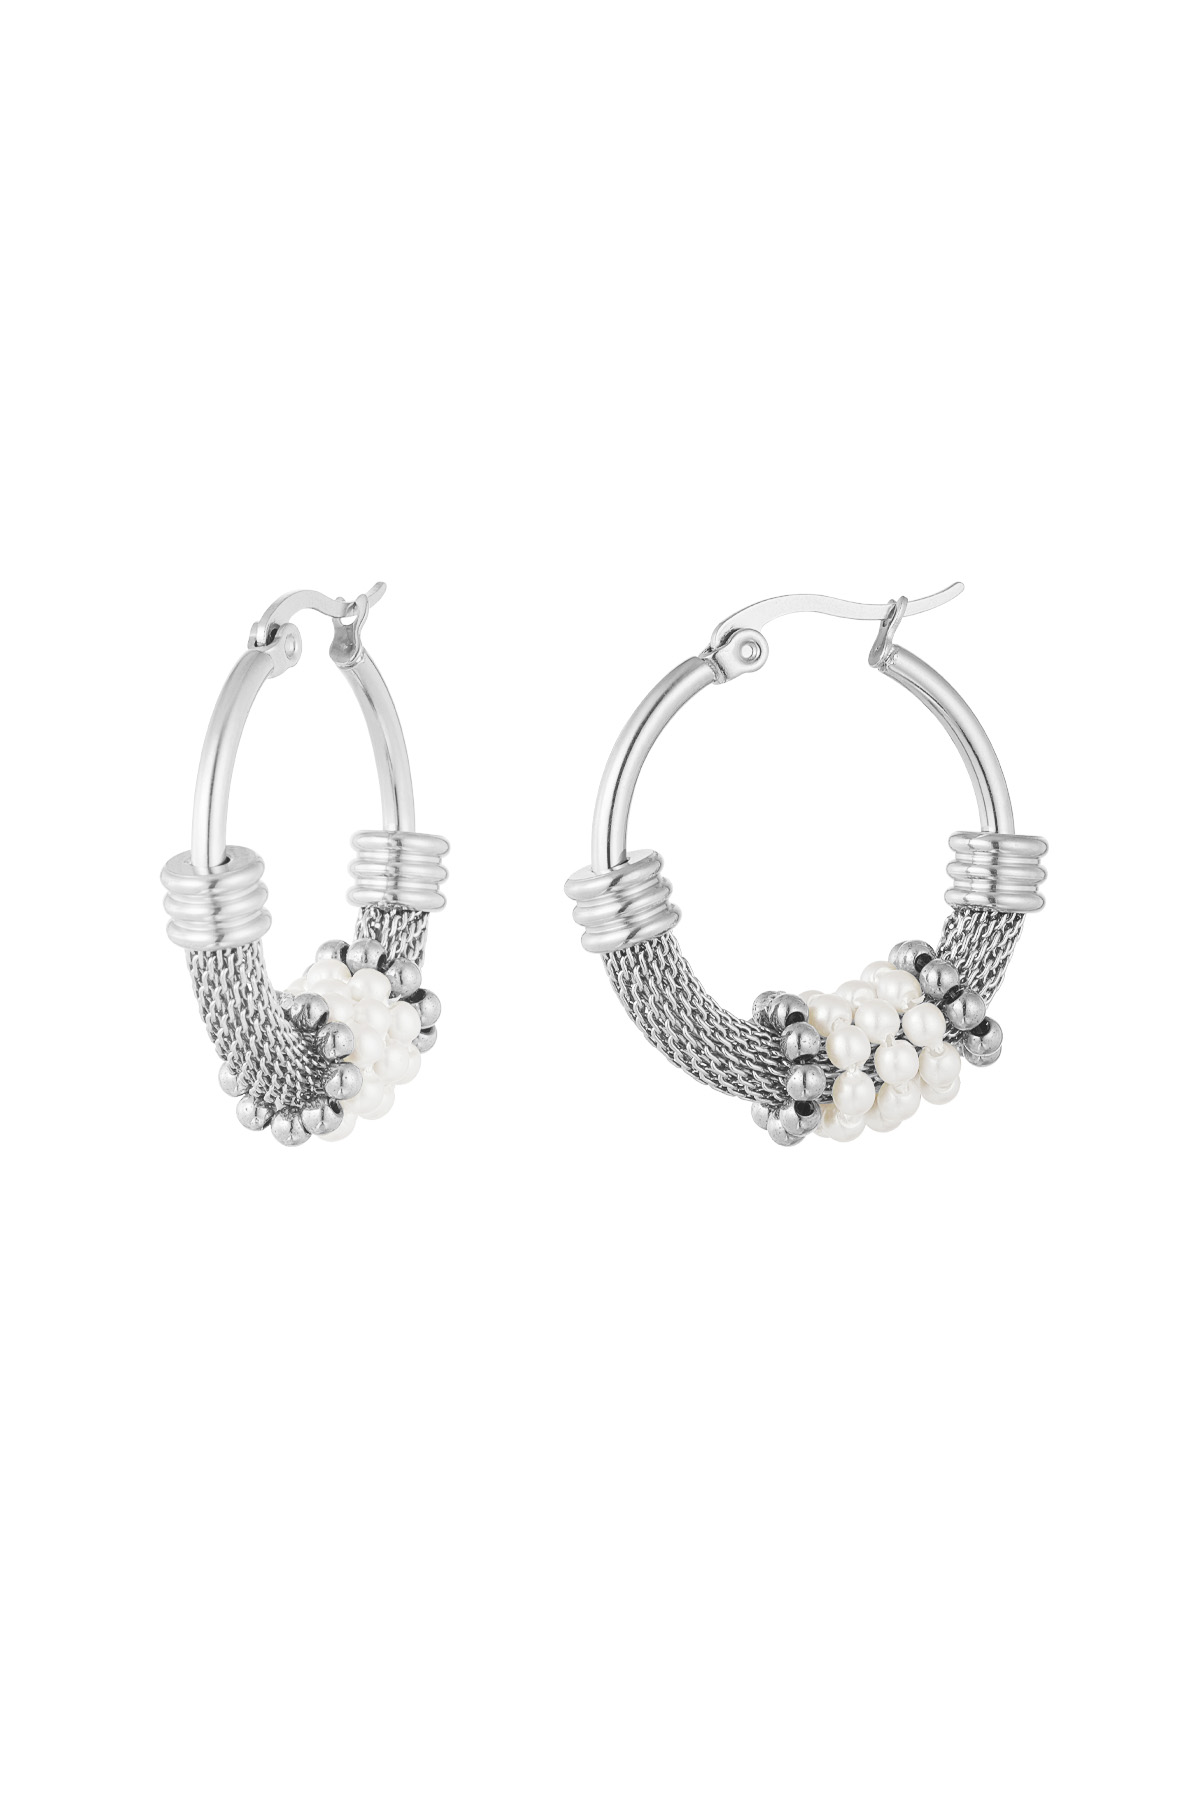 Ohrringe böhmische Perle - Silber